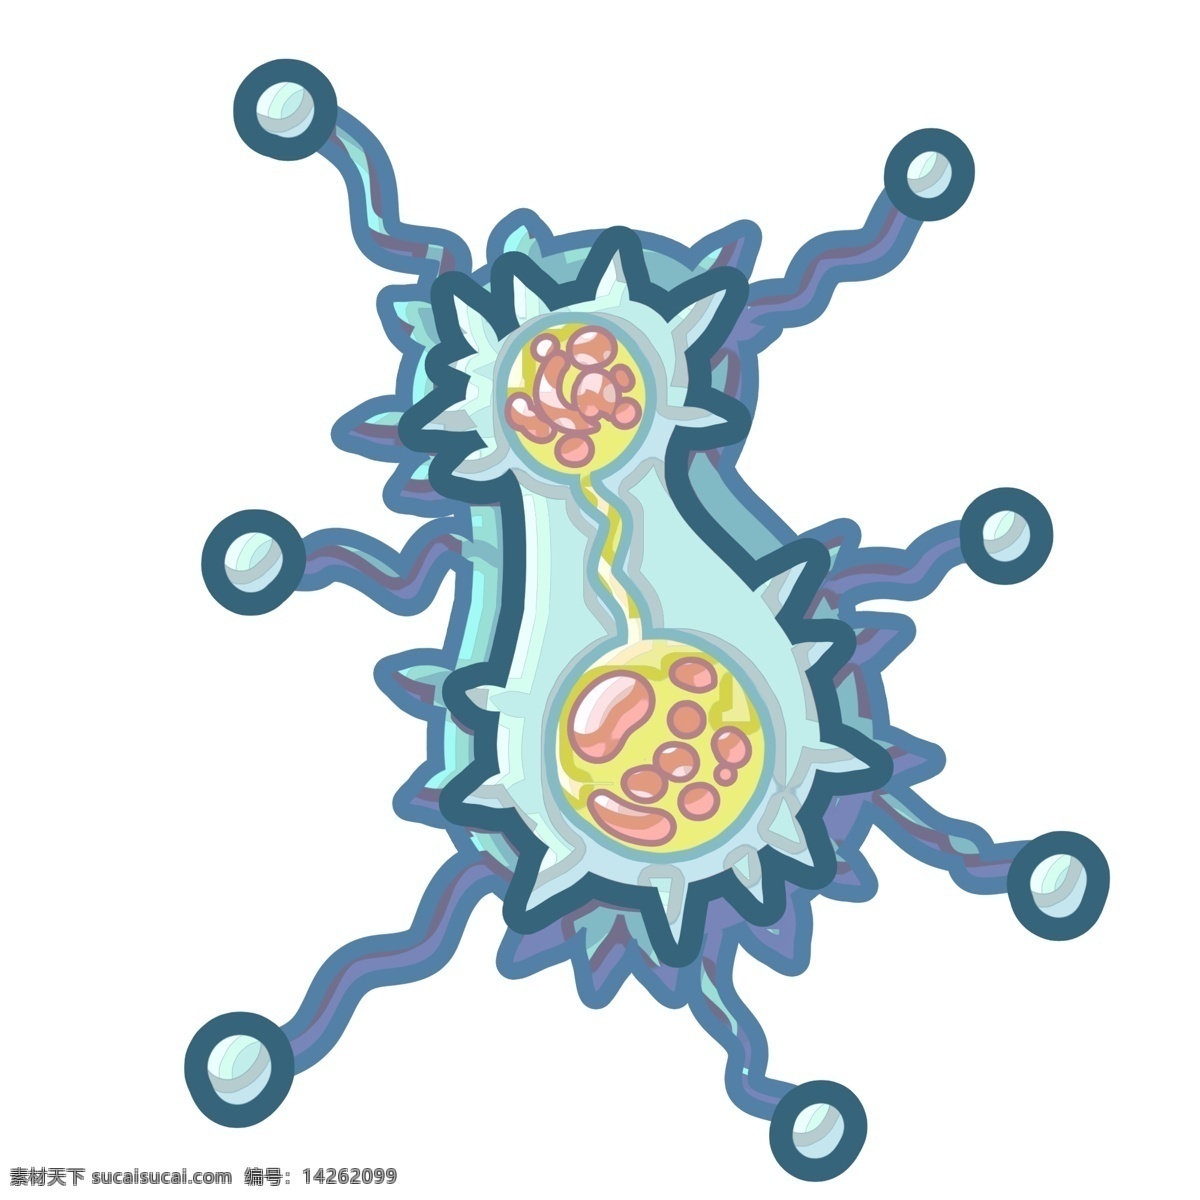 创意 病毒 细菌 插画 蓝色 创意细菌 圆形插图 绿色图案 仿真微生物 生物工程 生物 生病 病毒细菌插画